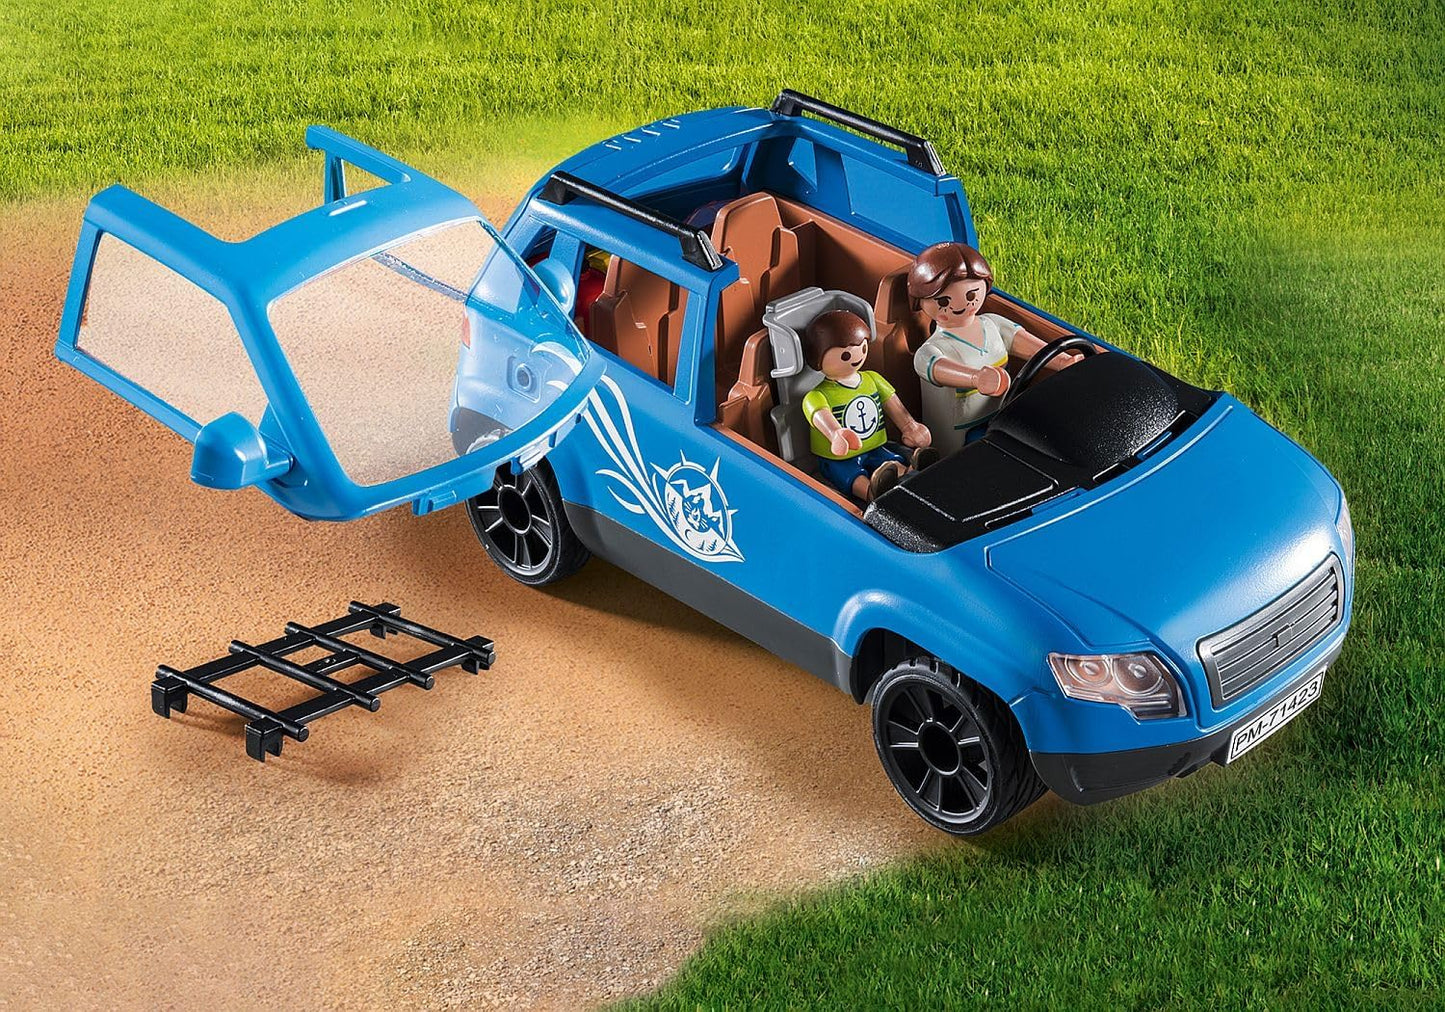 Playmobil 71423 Caravana divertida para a família com carro, brinquedo ao ar livre e dramatização imaginativa, conjuntos adequados para crianças de 4 anos ou mais